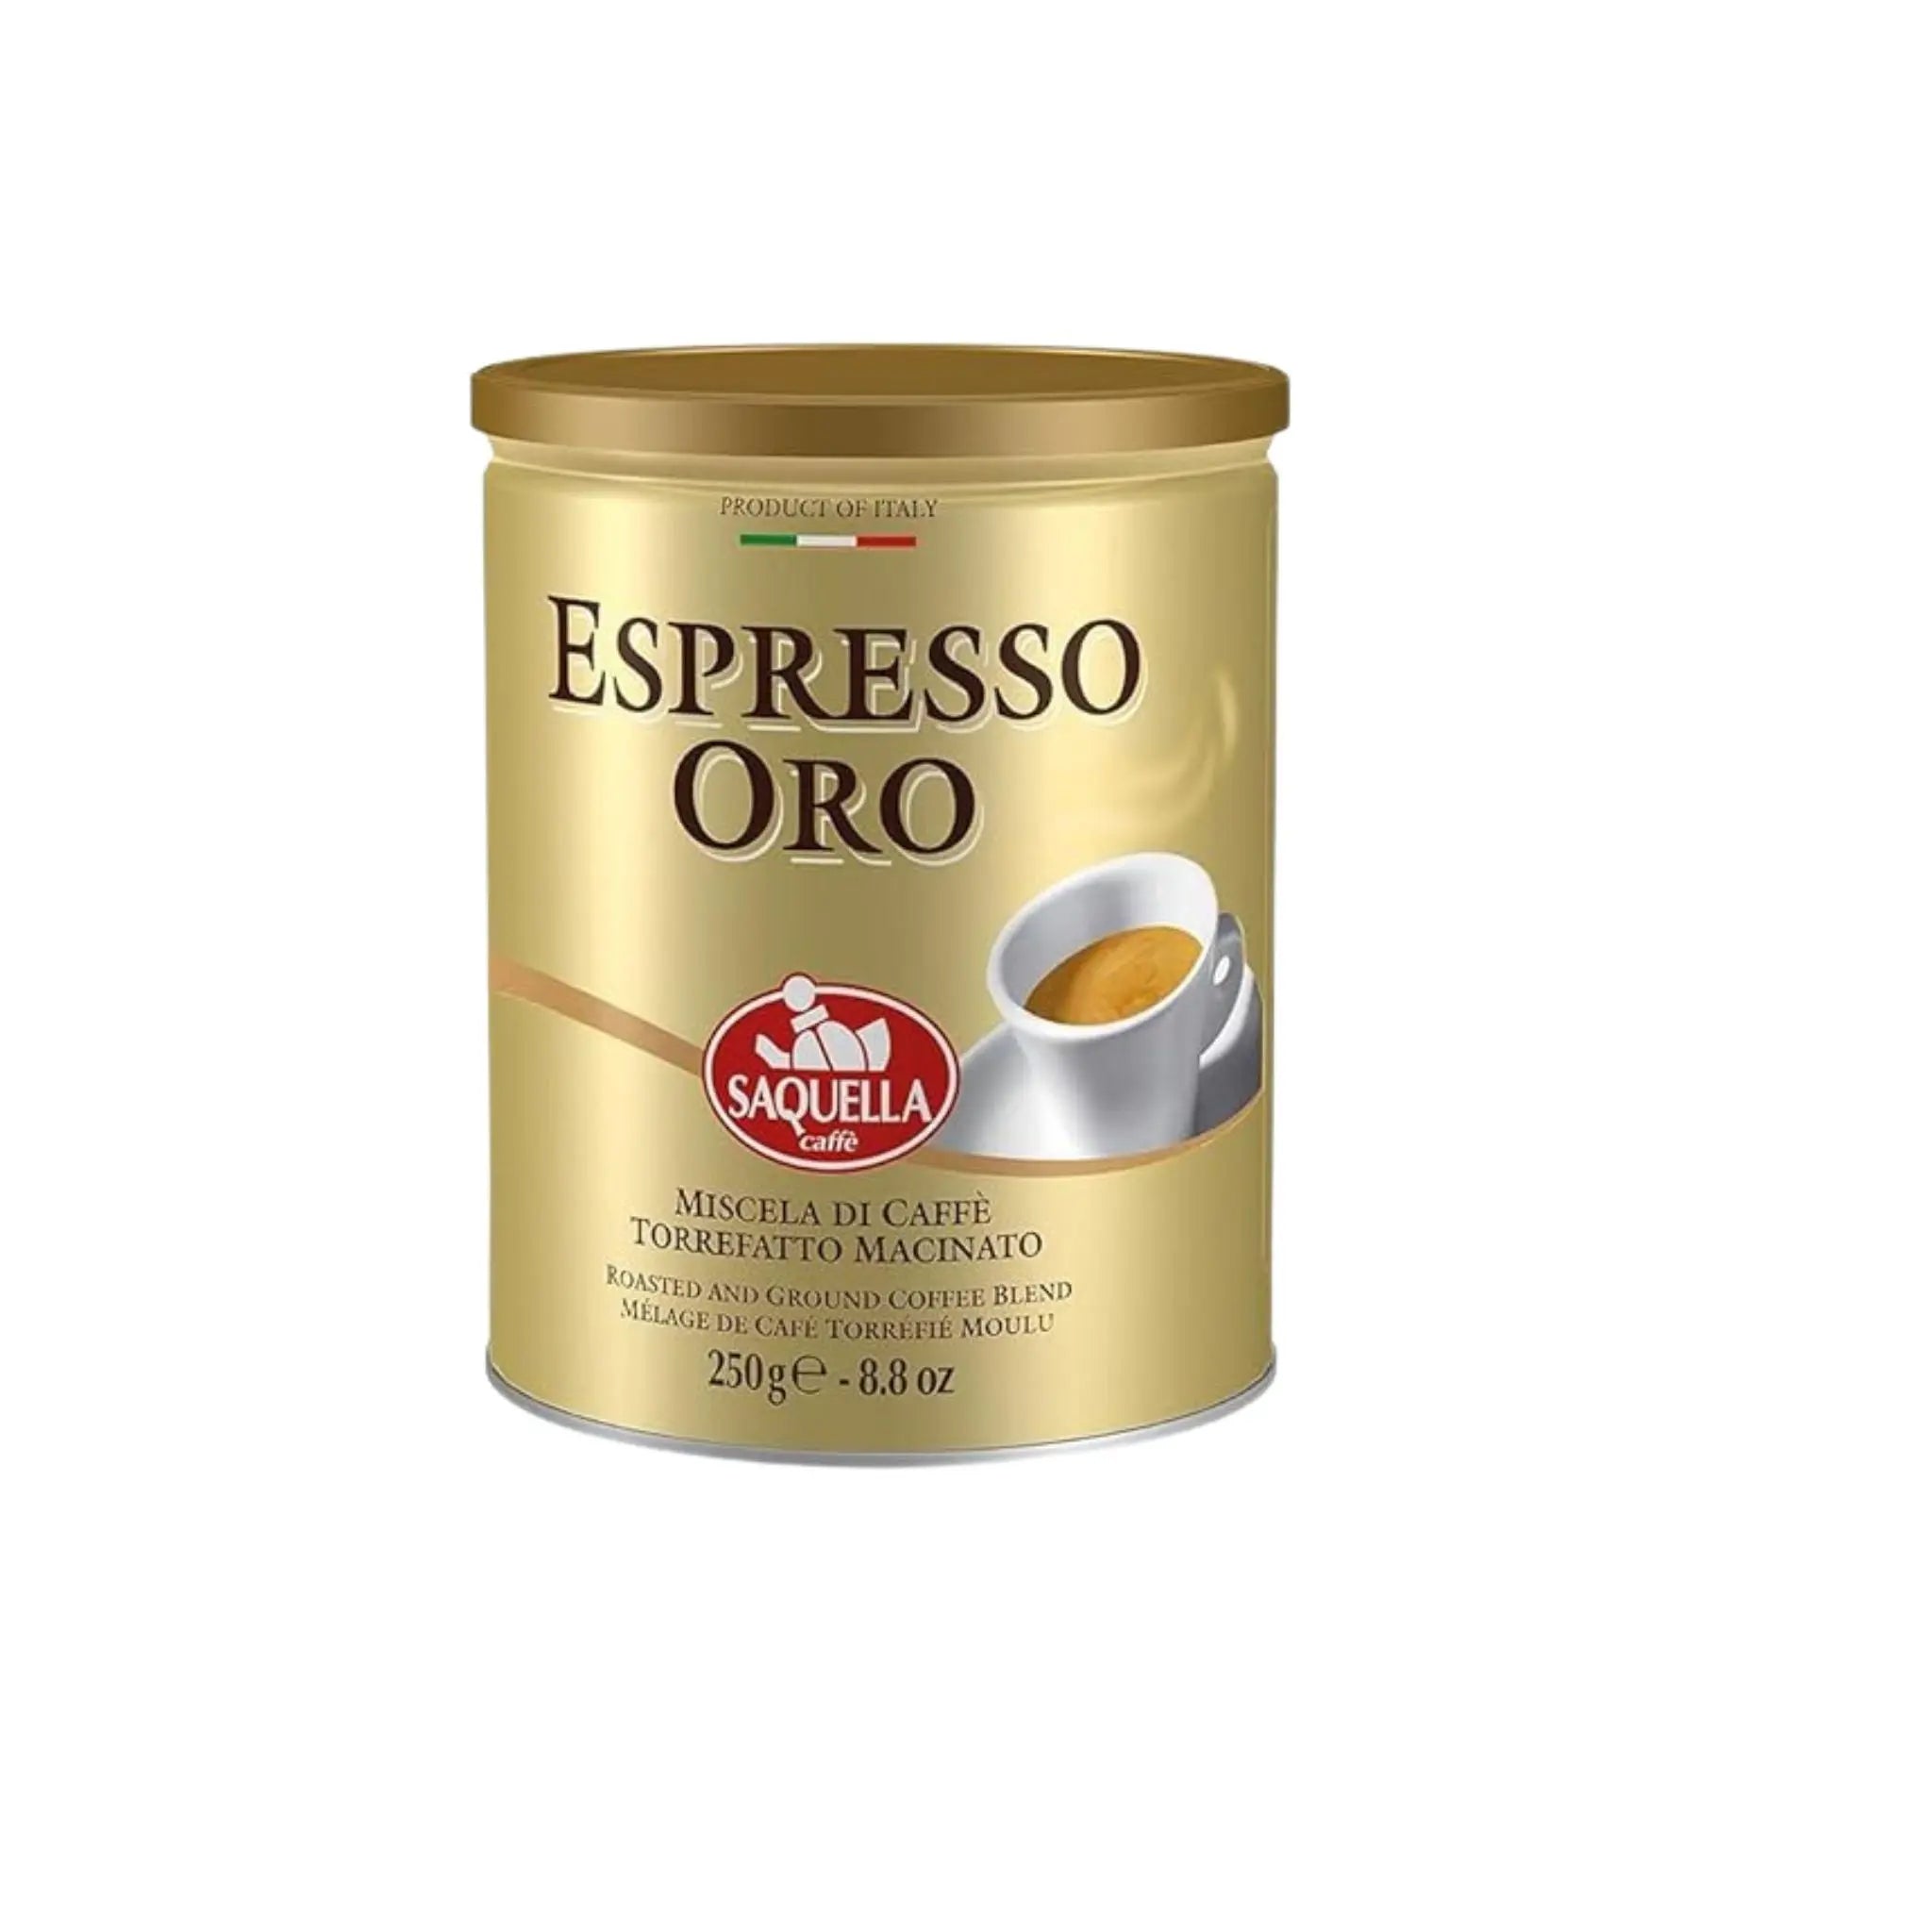 Saquella Espresso Oro Ground - 10x250g (1 carton) - Marino.AE